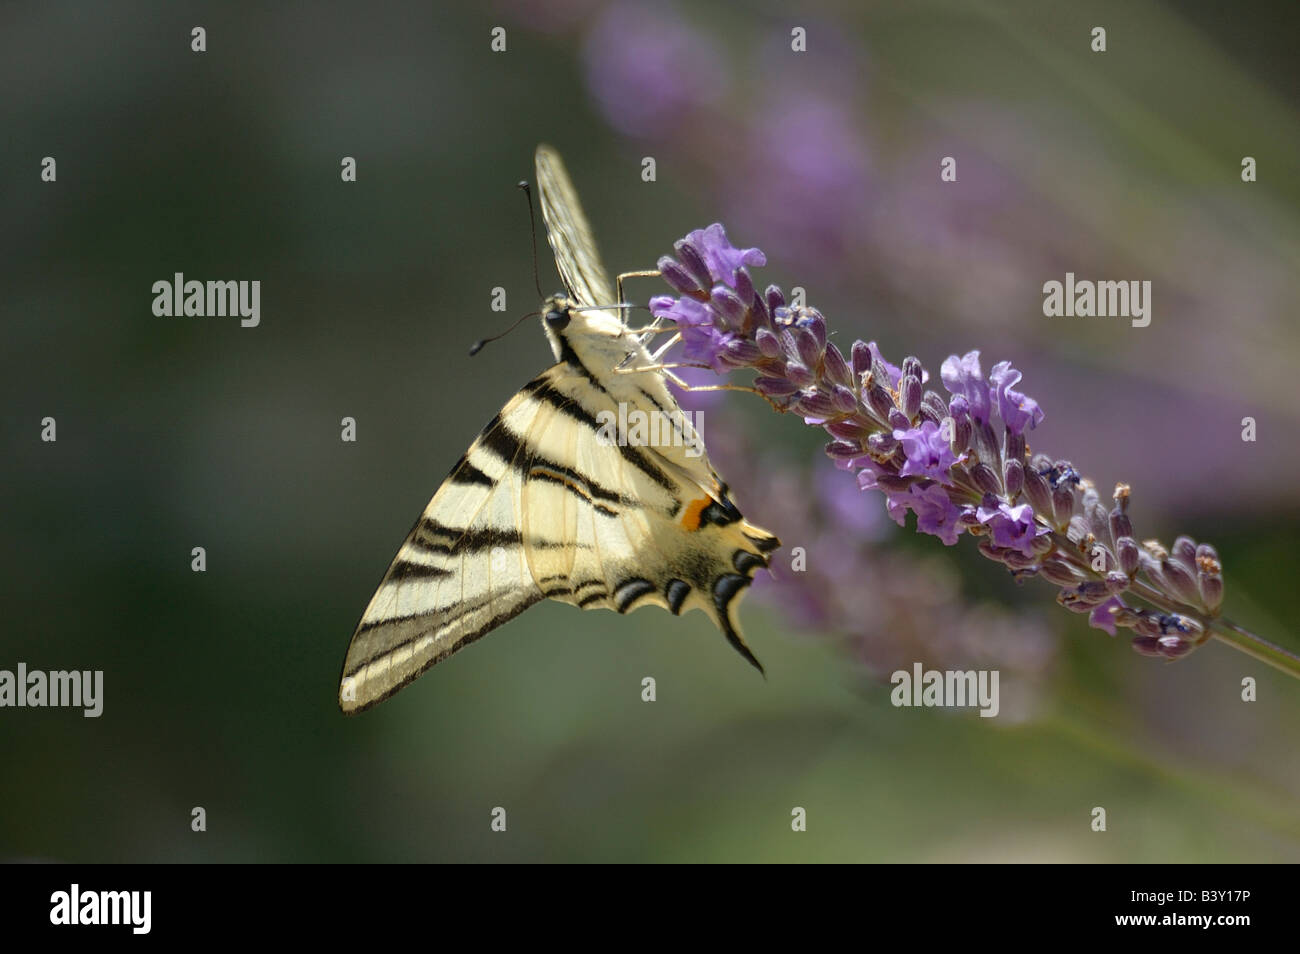 Der knappe Schwalbenschwanz Schmetterling findet sich in Gärten, Feldern und offenen Wäldern. Hier in Lavendelblüten in der Provence gesehen. Stockfoto